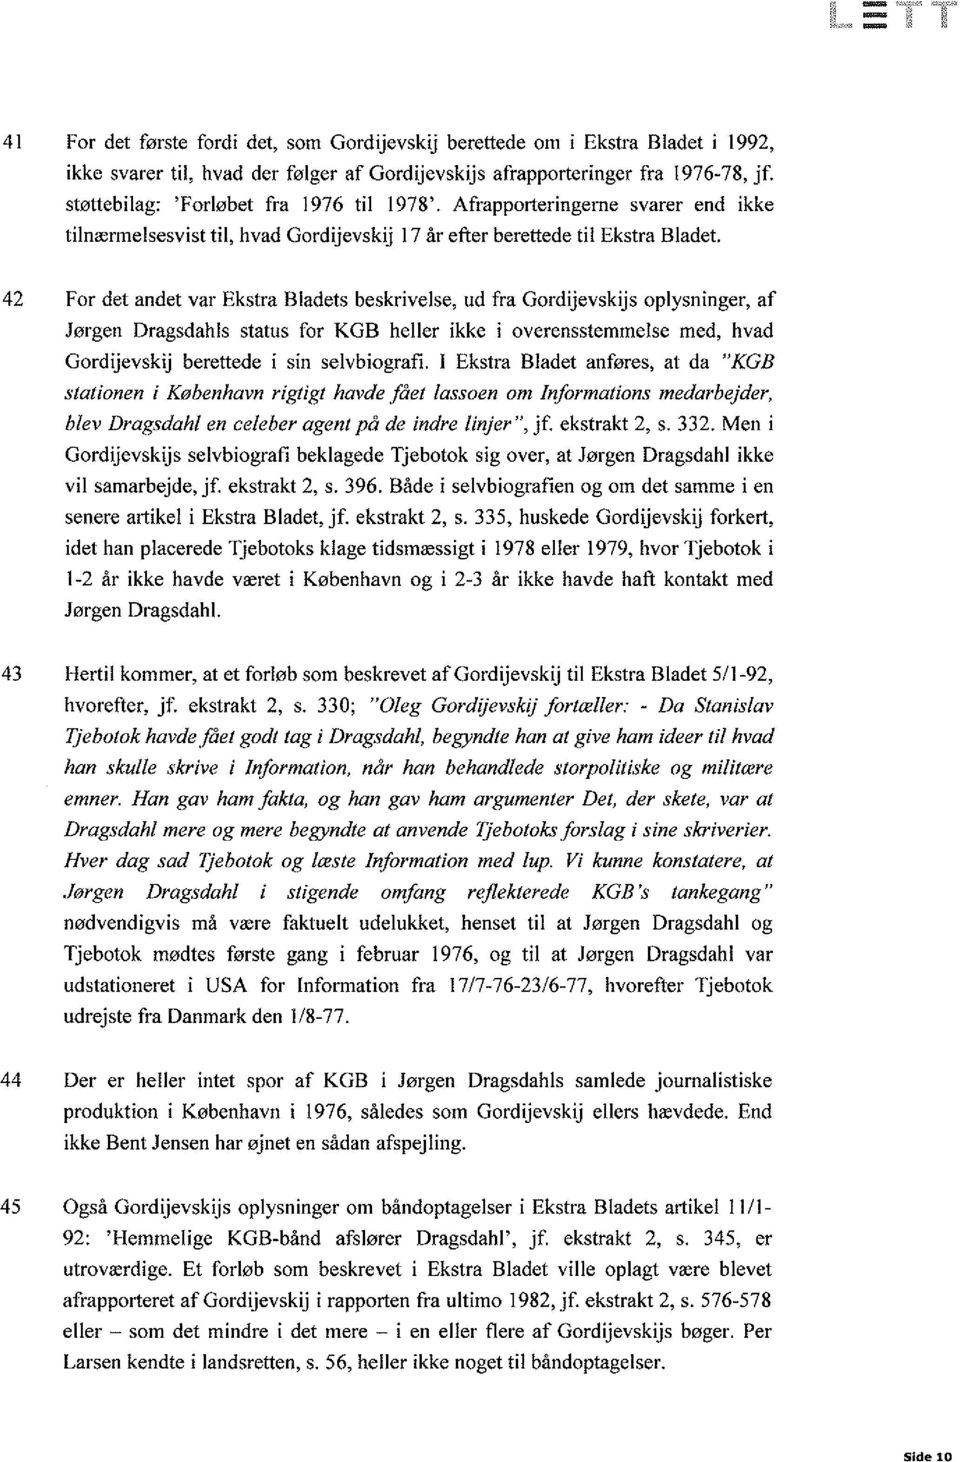 42 For det andet var Ekstra Bladets beskrivelse, ud fra Gordijevskijs oplysninger, af Jørgen Dragsdahls status for KGB heller ikke i overensstemmelse med, hvad Gordijevskij berettede i sin